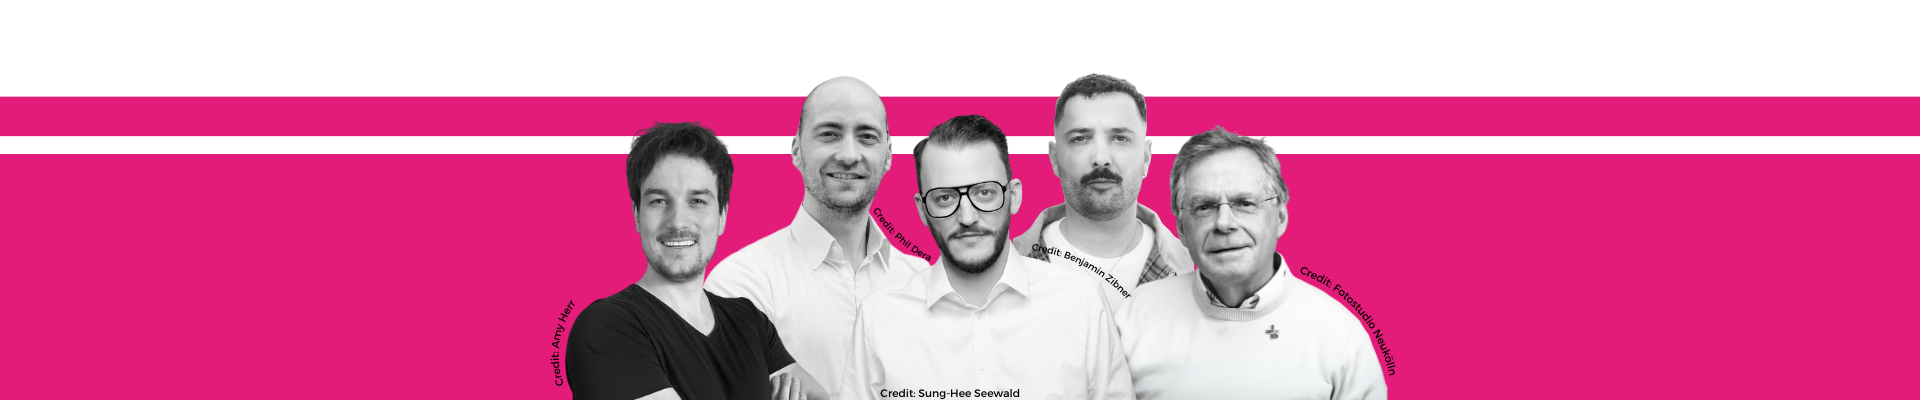 Bild: Die fünf HeForShe Deutschlandbotschafter stehen zusammen auf einem Bild und schauen in die Kamera.